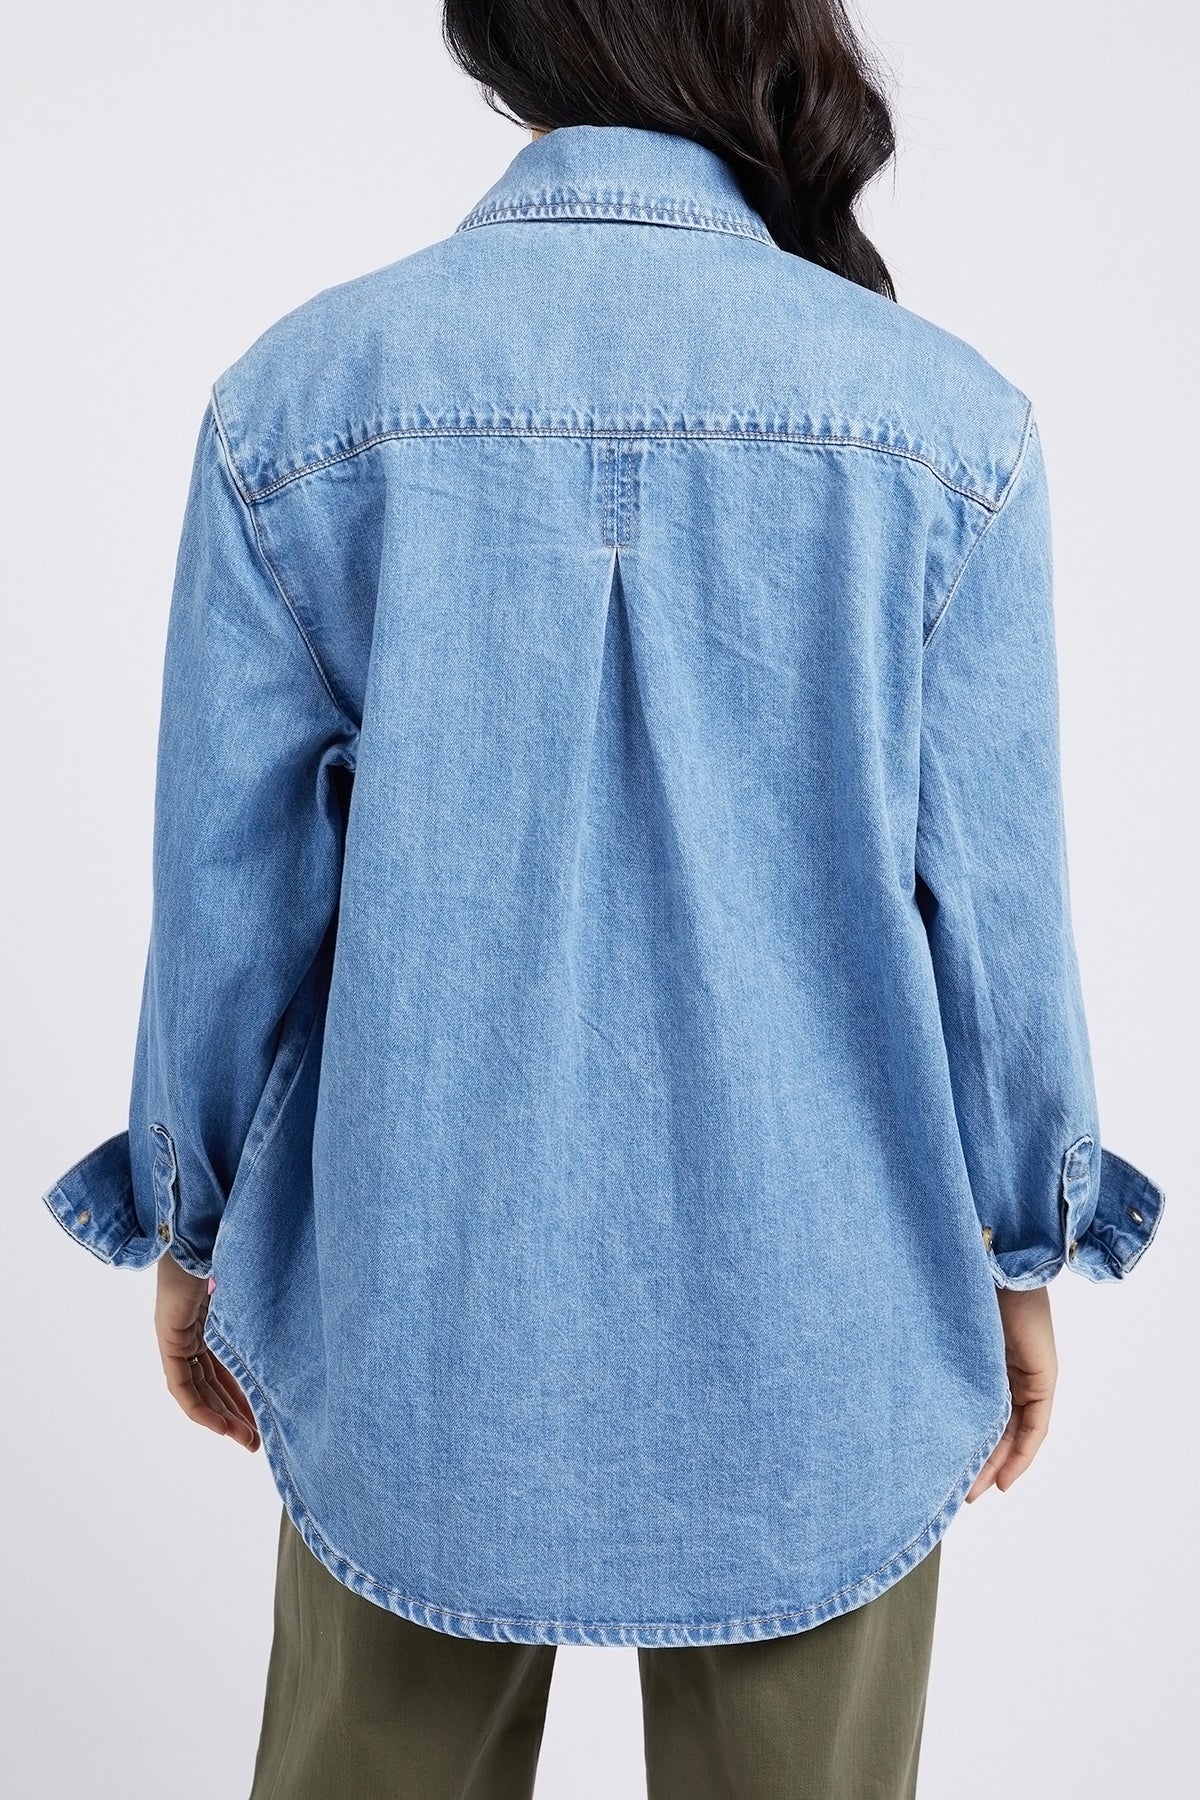 Odette Long Sleeve Denim Shirt Mid Blue Wash